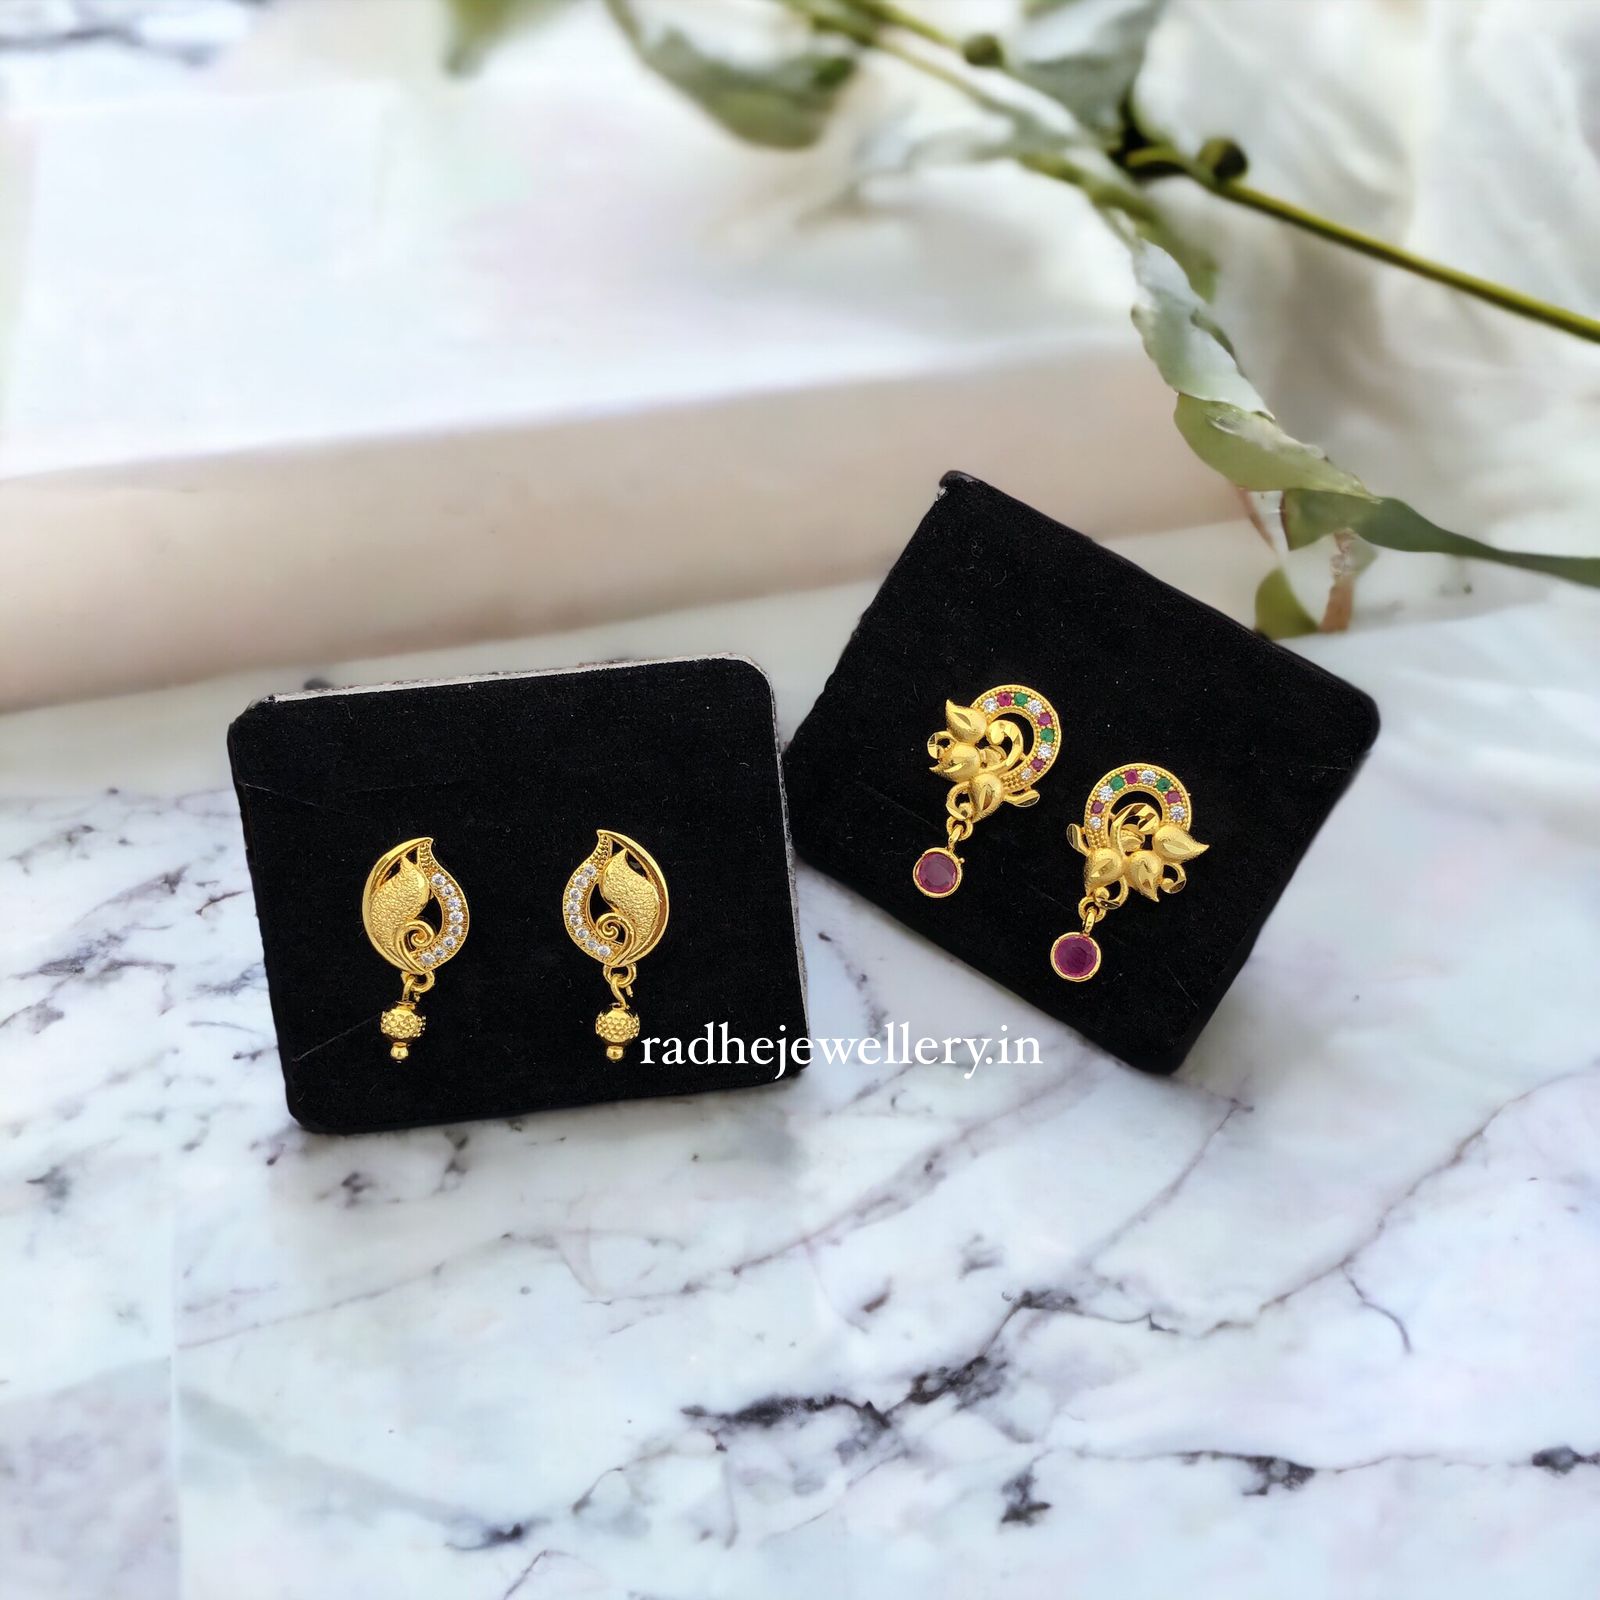 14K Gold Stud Earrings 2.3 Grams w/ Diamond Fan Design 3/8” x 3/8” | eBay